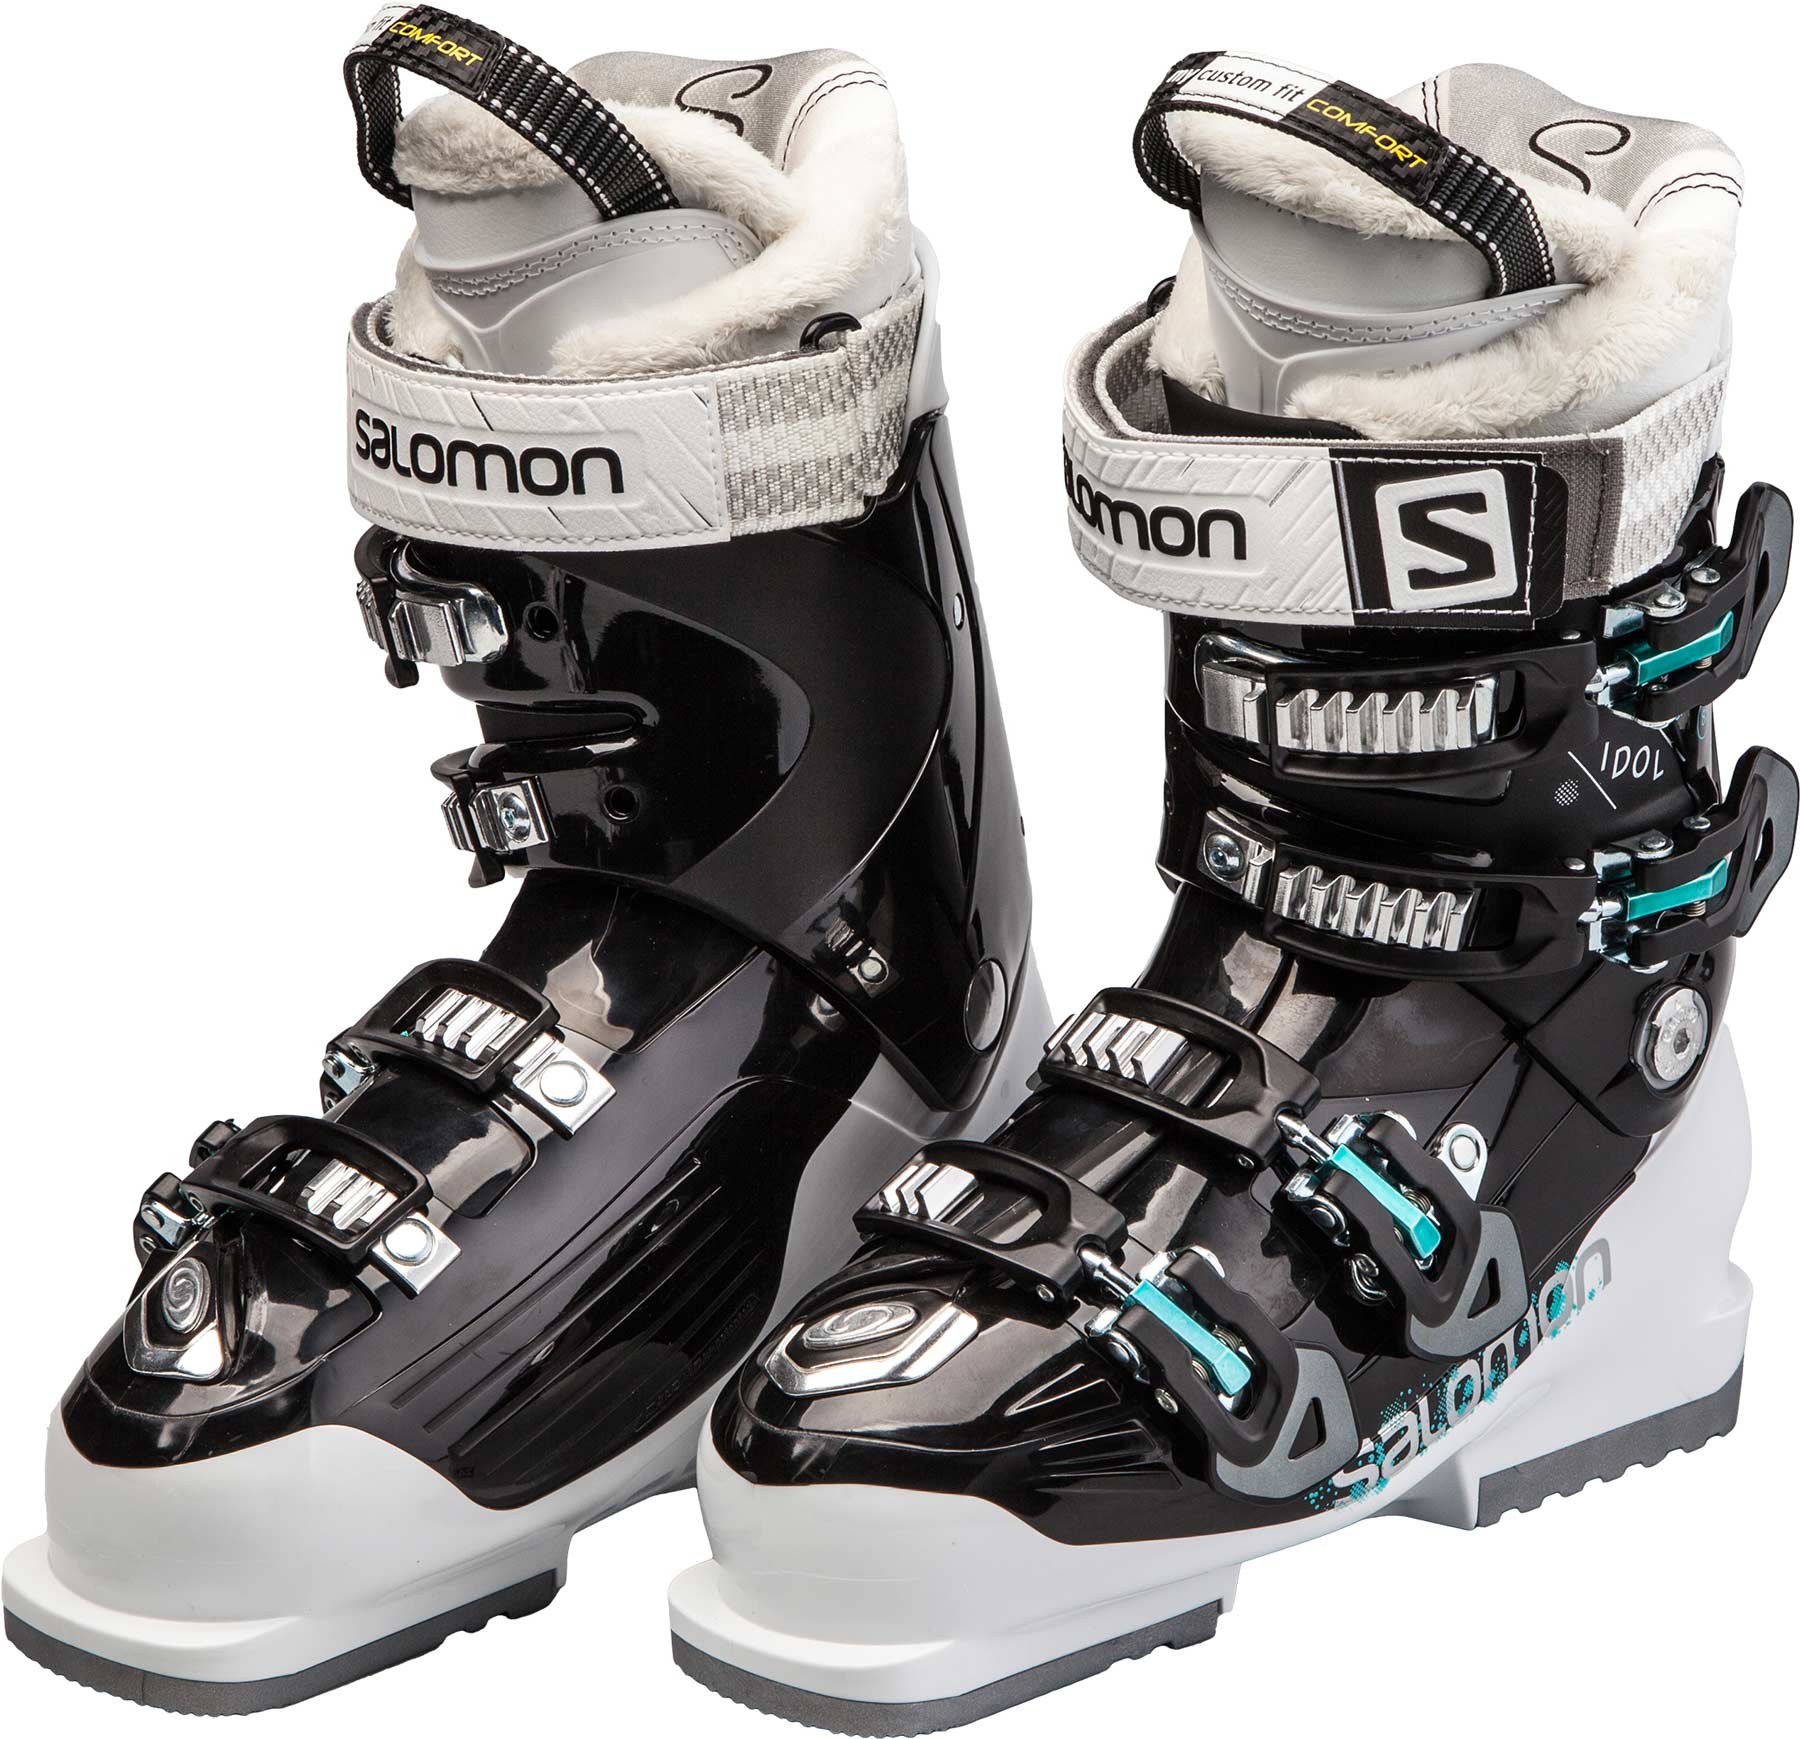 Women’s downhill ski boots